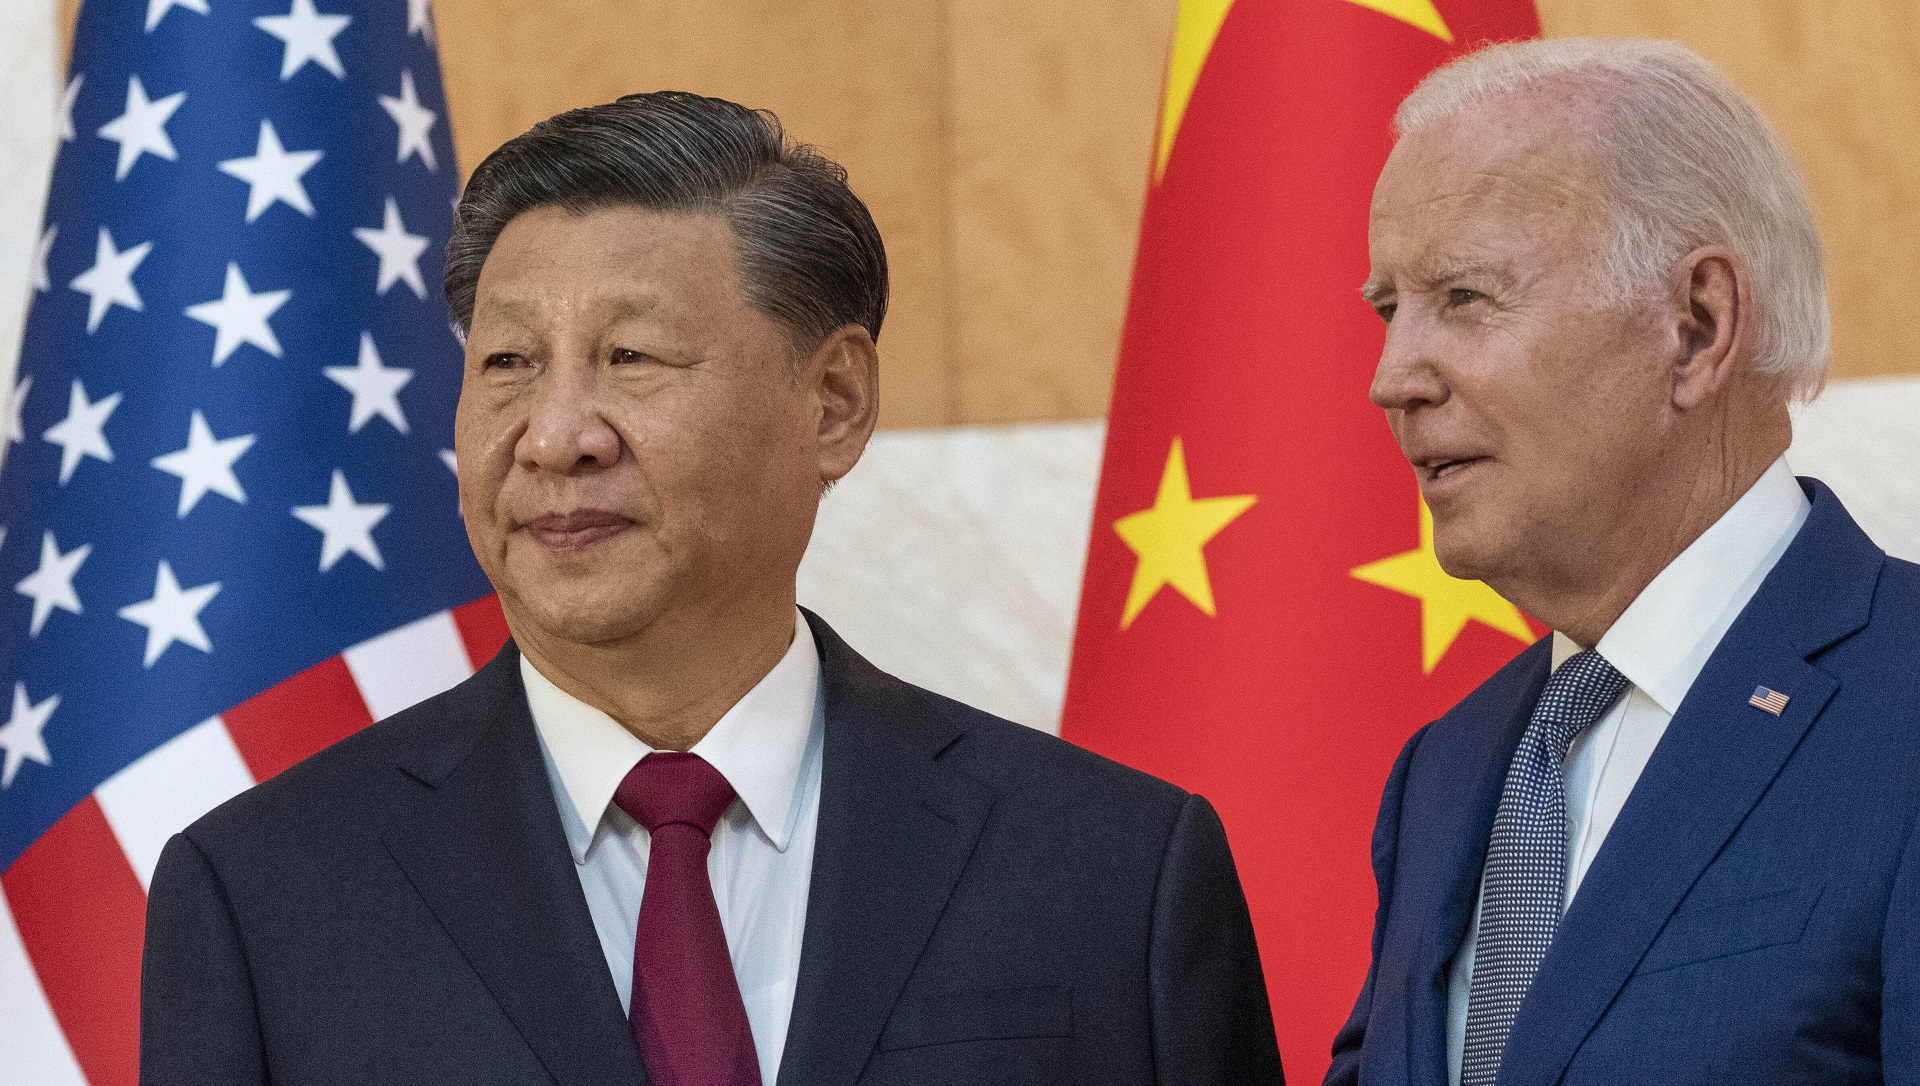 FOTO DE ARCHIVO: El presidente de Estados Unidos, Joe Biden, a la derecha, junto al jefe del régimen chino, Xi Jinping, antes de una reunión al margen de la cumbre del G20, el lunes 14 de noviembre de 2022, en Bali, Indonesia. (AP Photo/Alex Brandon)